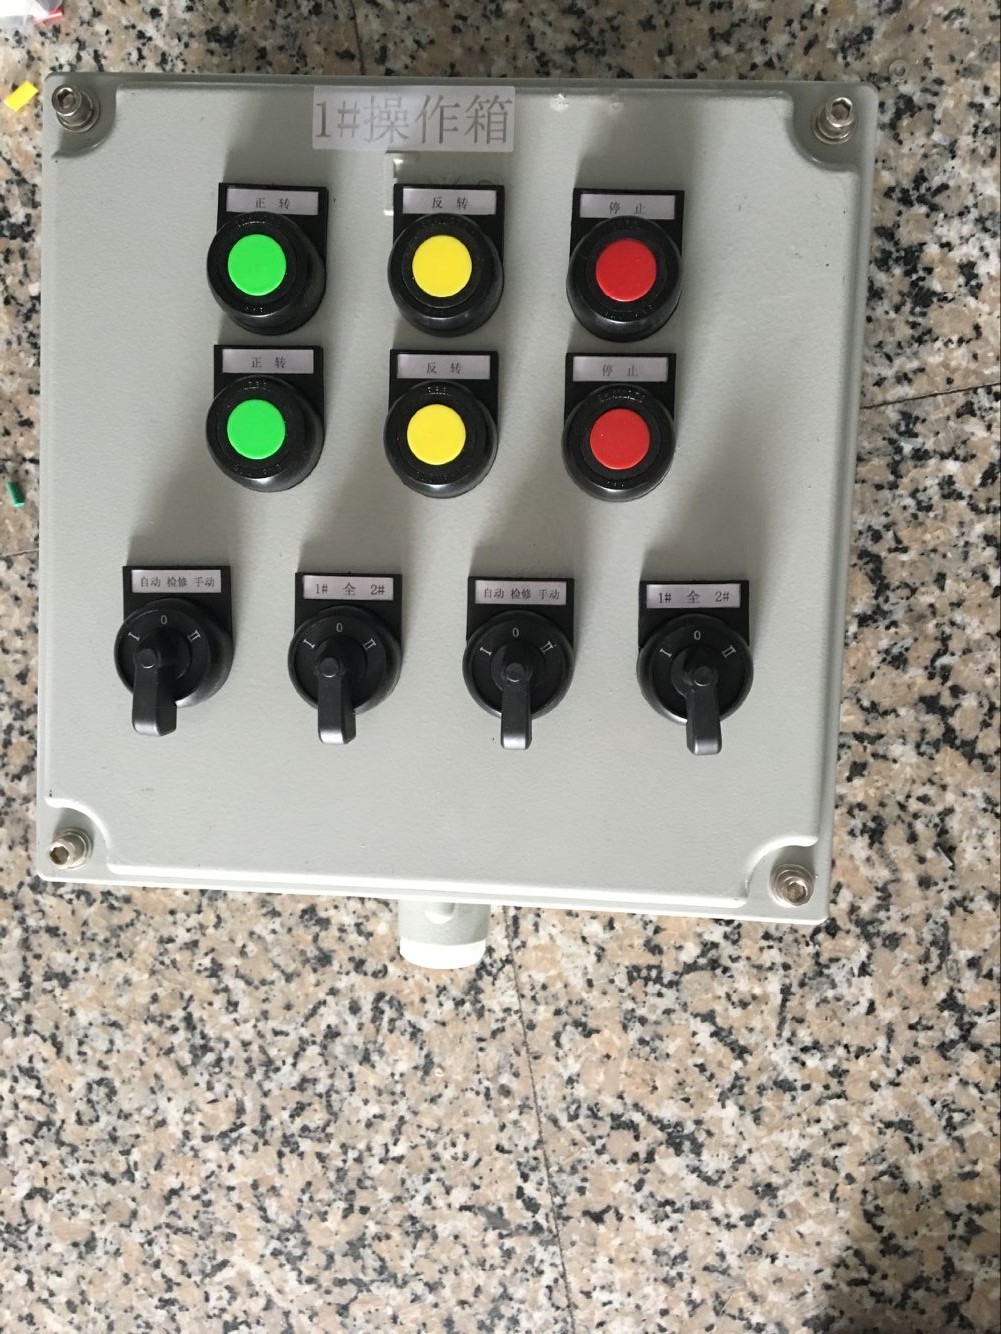 欧普照明获得实用新型专利授权：“控制箱面板和控制箱”